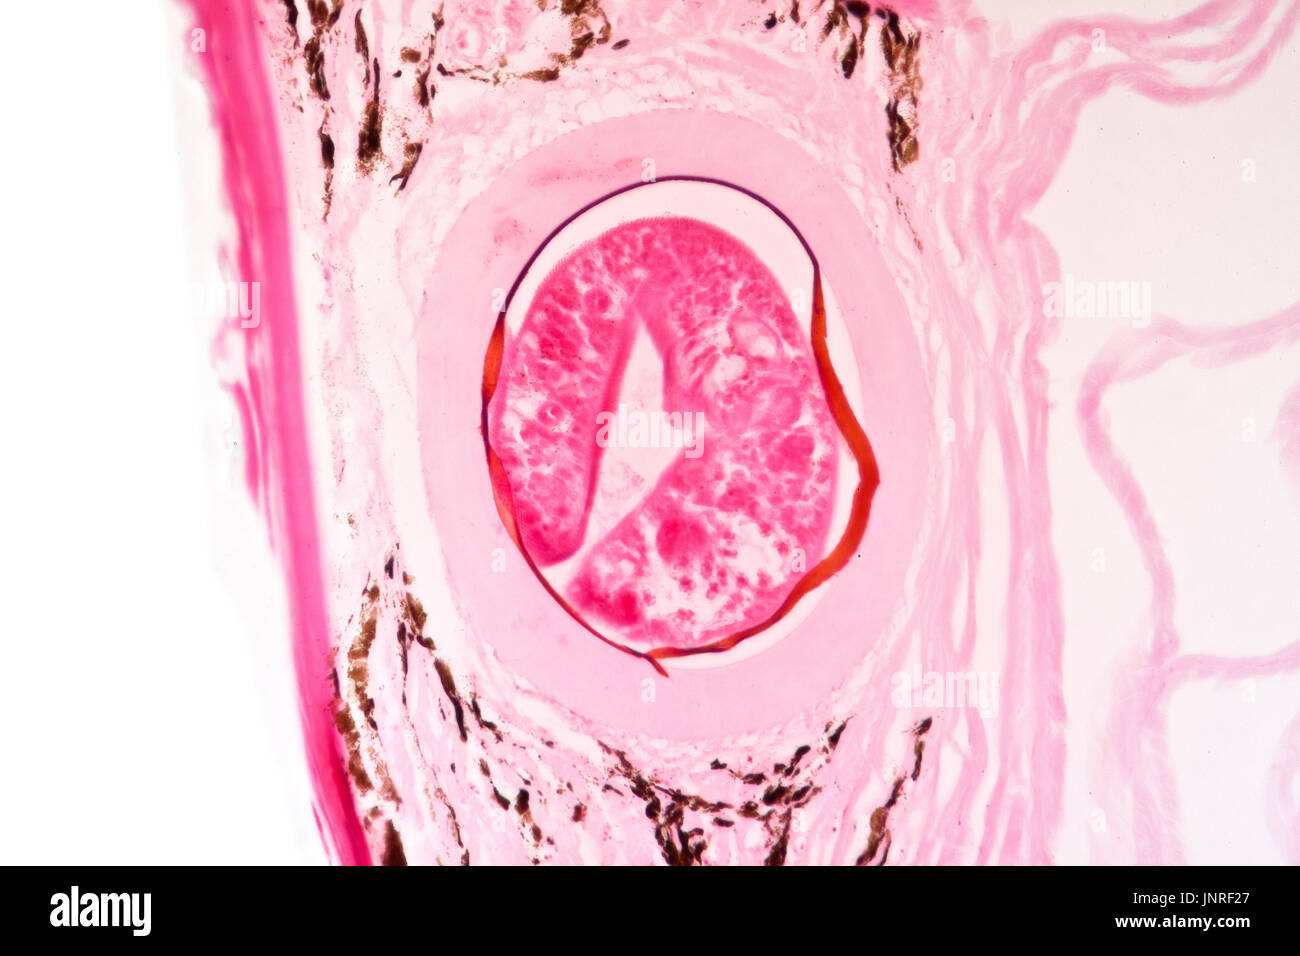 Trematoda metacercaria incrustado en la piel del bacalao, jóvenes de Fluke en quiste, brightfield microfotografía Foto de stock